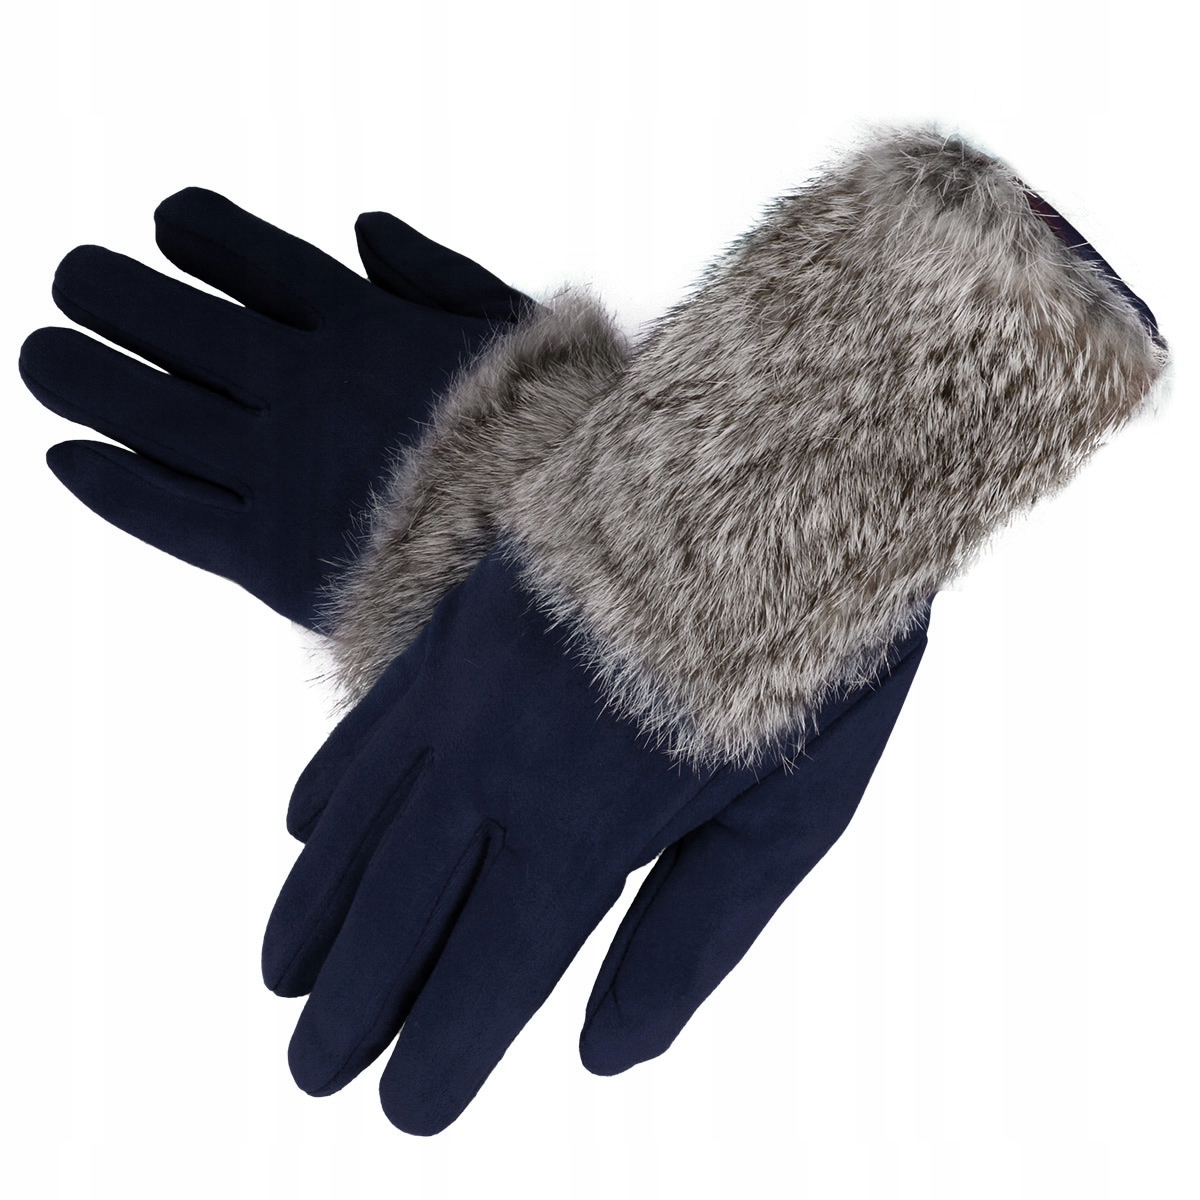 Elegantní dotykové dámské zimní rukavice s kožešinou - tmavě modré - vel. UNI